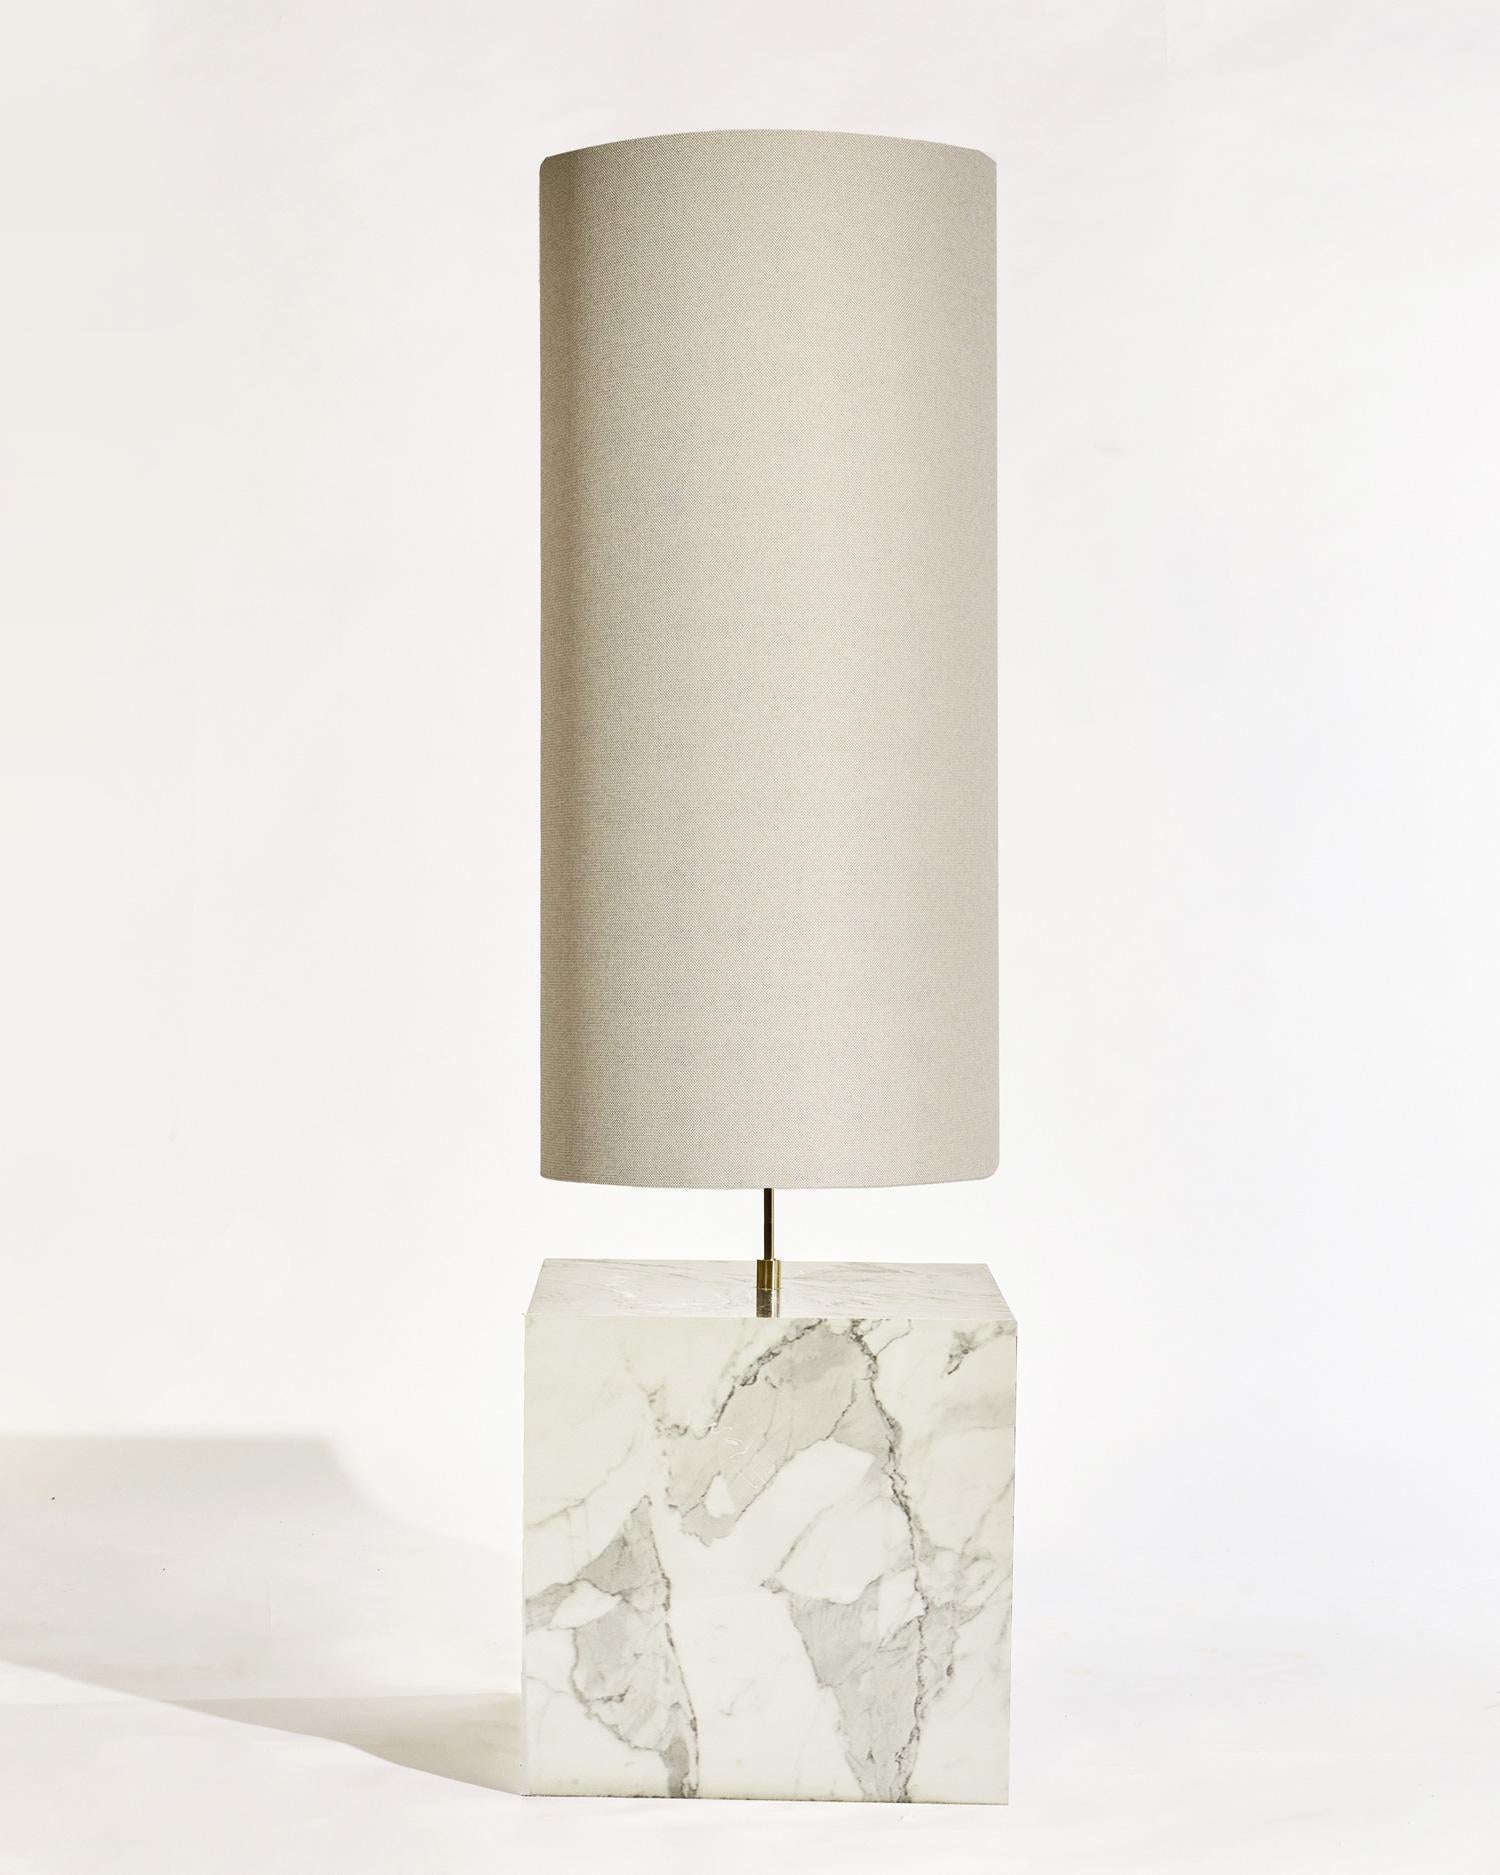 Le lampadaire Coexist se compose d'une base cubique en marbre et d'un abat-jour en tissu recyclé.

La lampe sert de pièce maîtresse sculpturale pour n'importe quelle pièce, émettant une lumière douce et chaude pour attirer le spectateur dans les